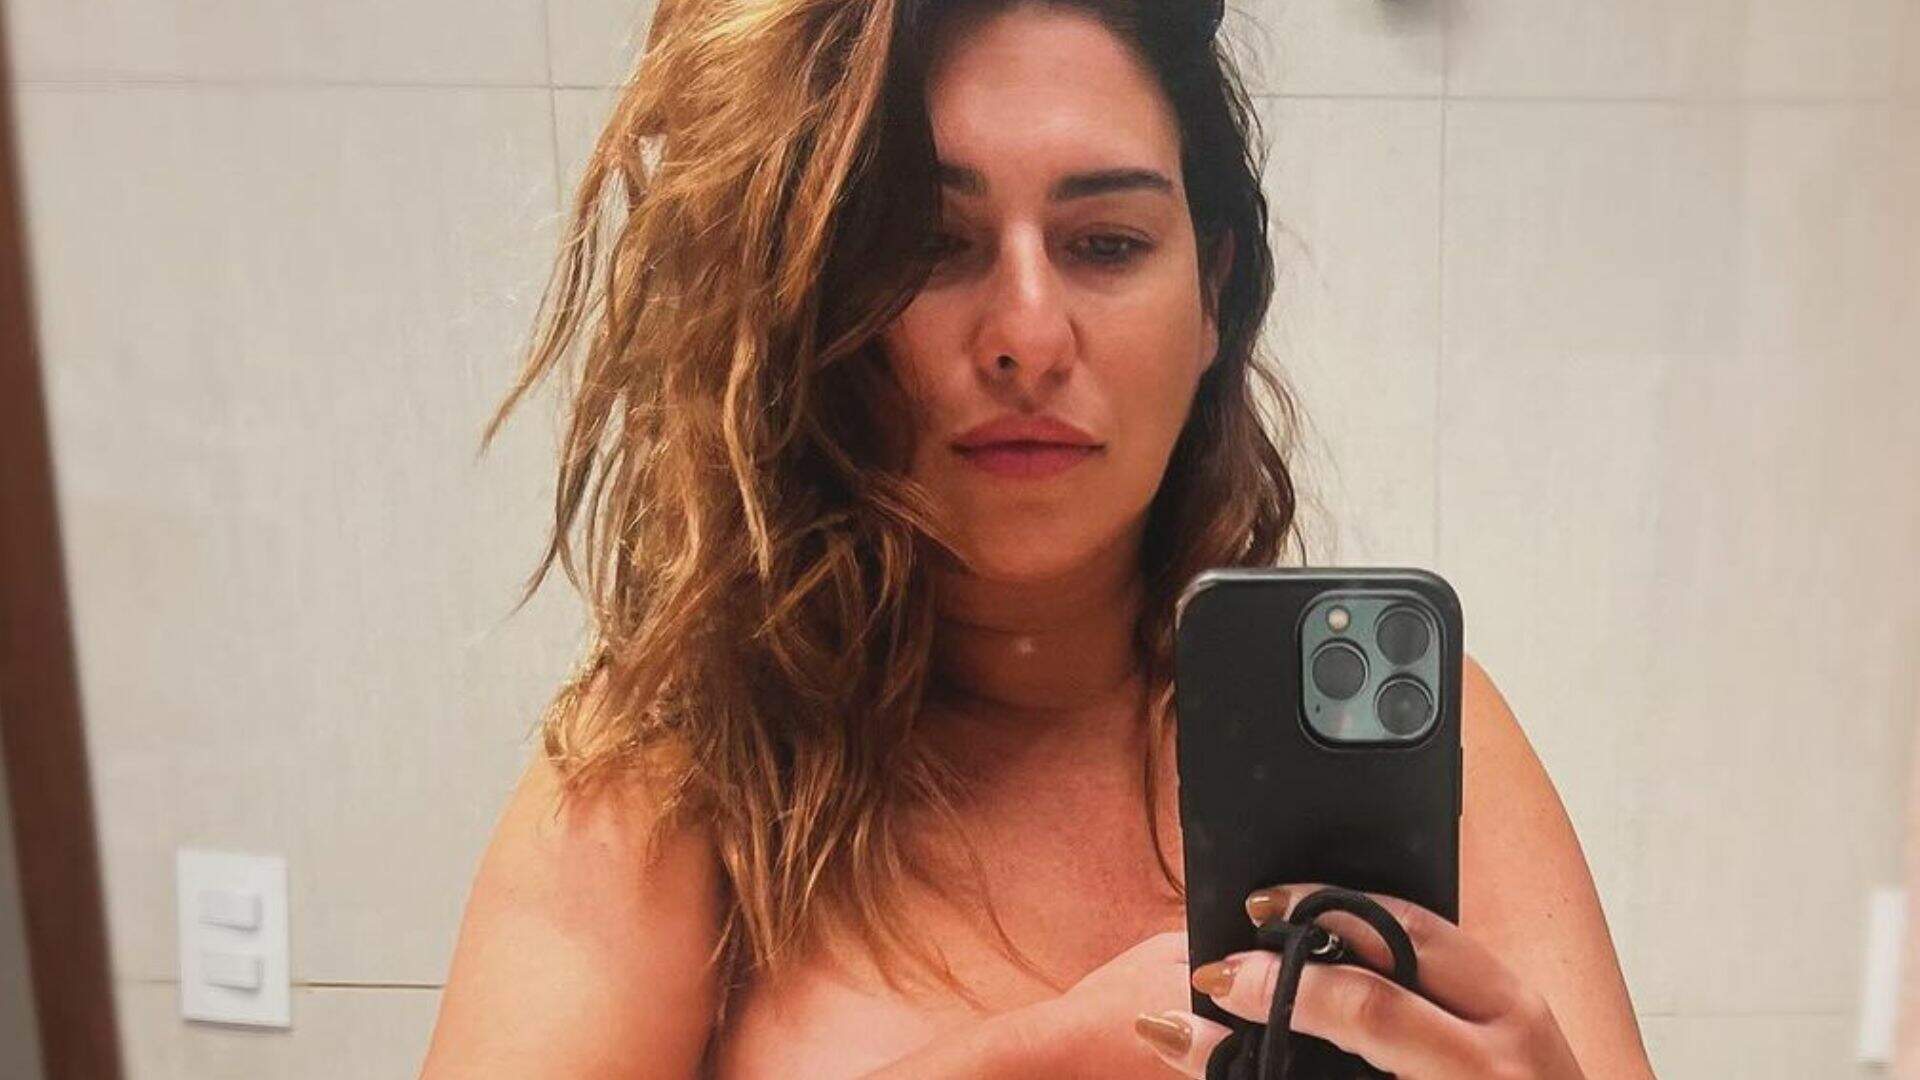 Grávida, Fernanda Paes Leme surge nua e mostra o barrigão em selfie no espelho - Metropolitana FM